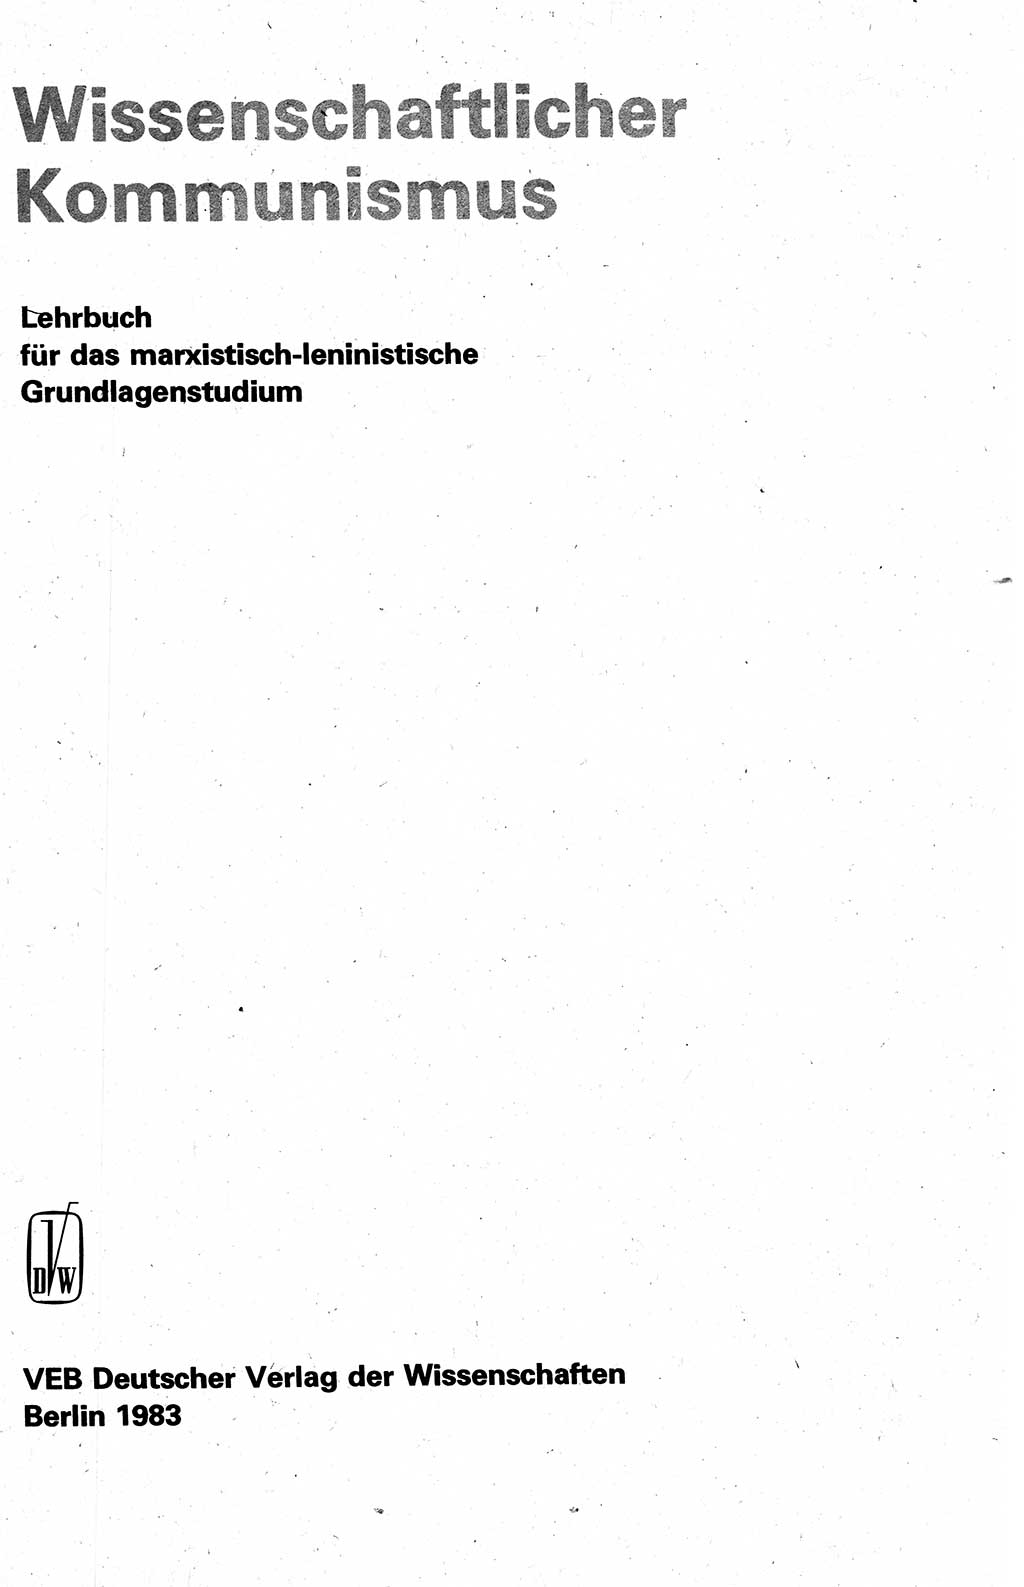 Wissenschaftlicher Kommunismus [Deutsche Demokratische Republik (DDR)], Lehrbuch für das marxistisch-leninistische Grundlagenstudium 1983, Seite 3 (Wiss. Komm. DDR Lb. 1983, S. 3)